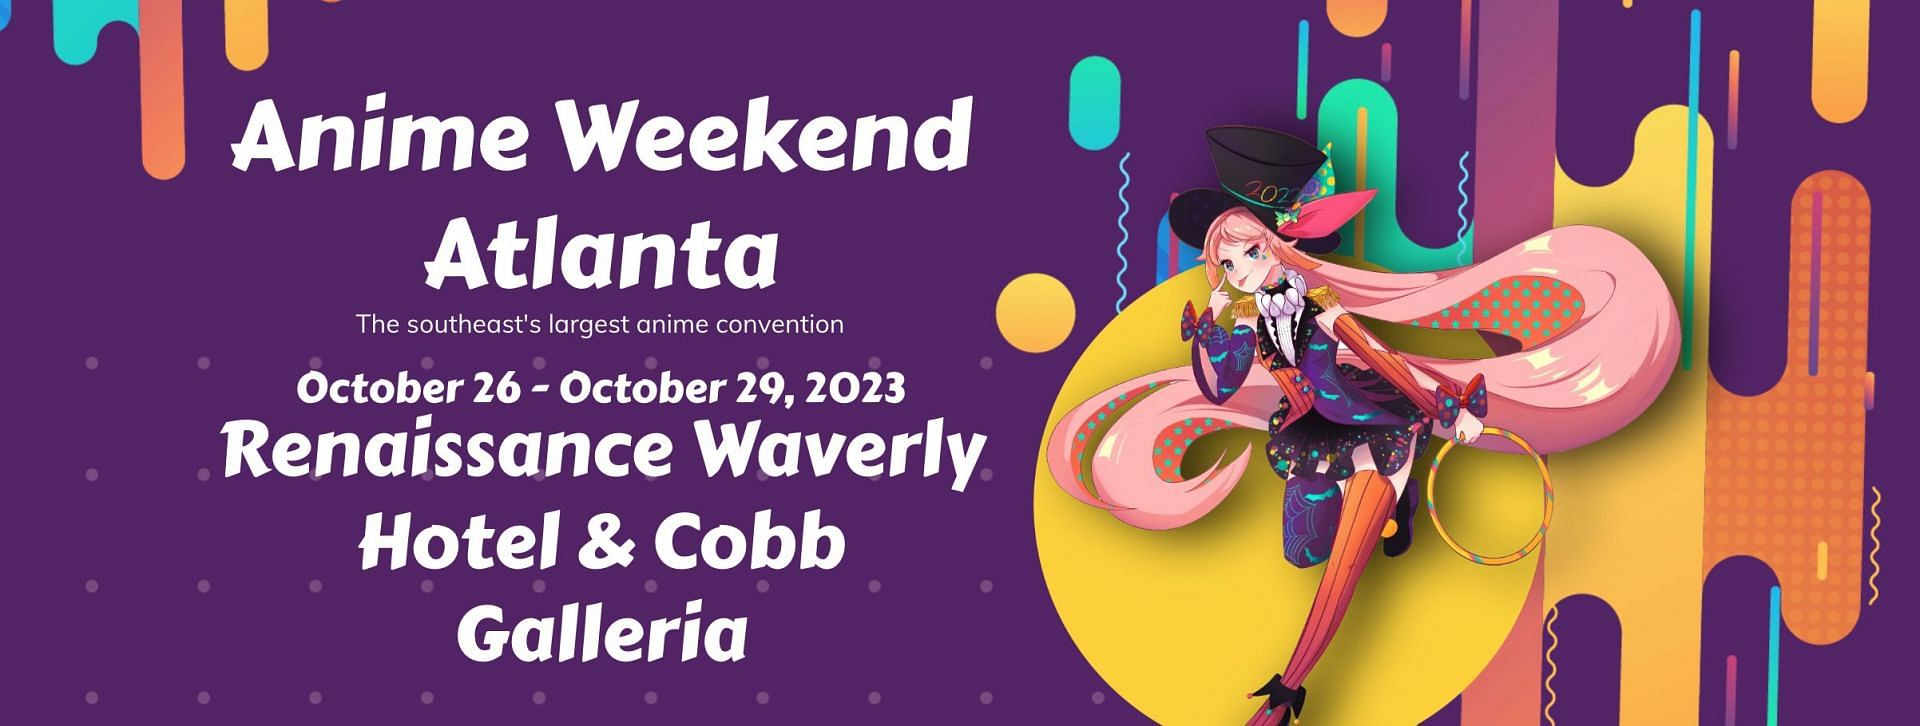 Anime Weekend Atlanta - Anime Weekend Atlanta